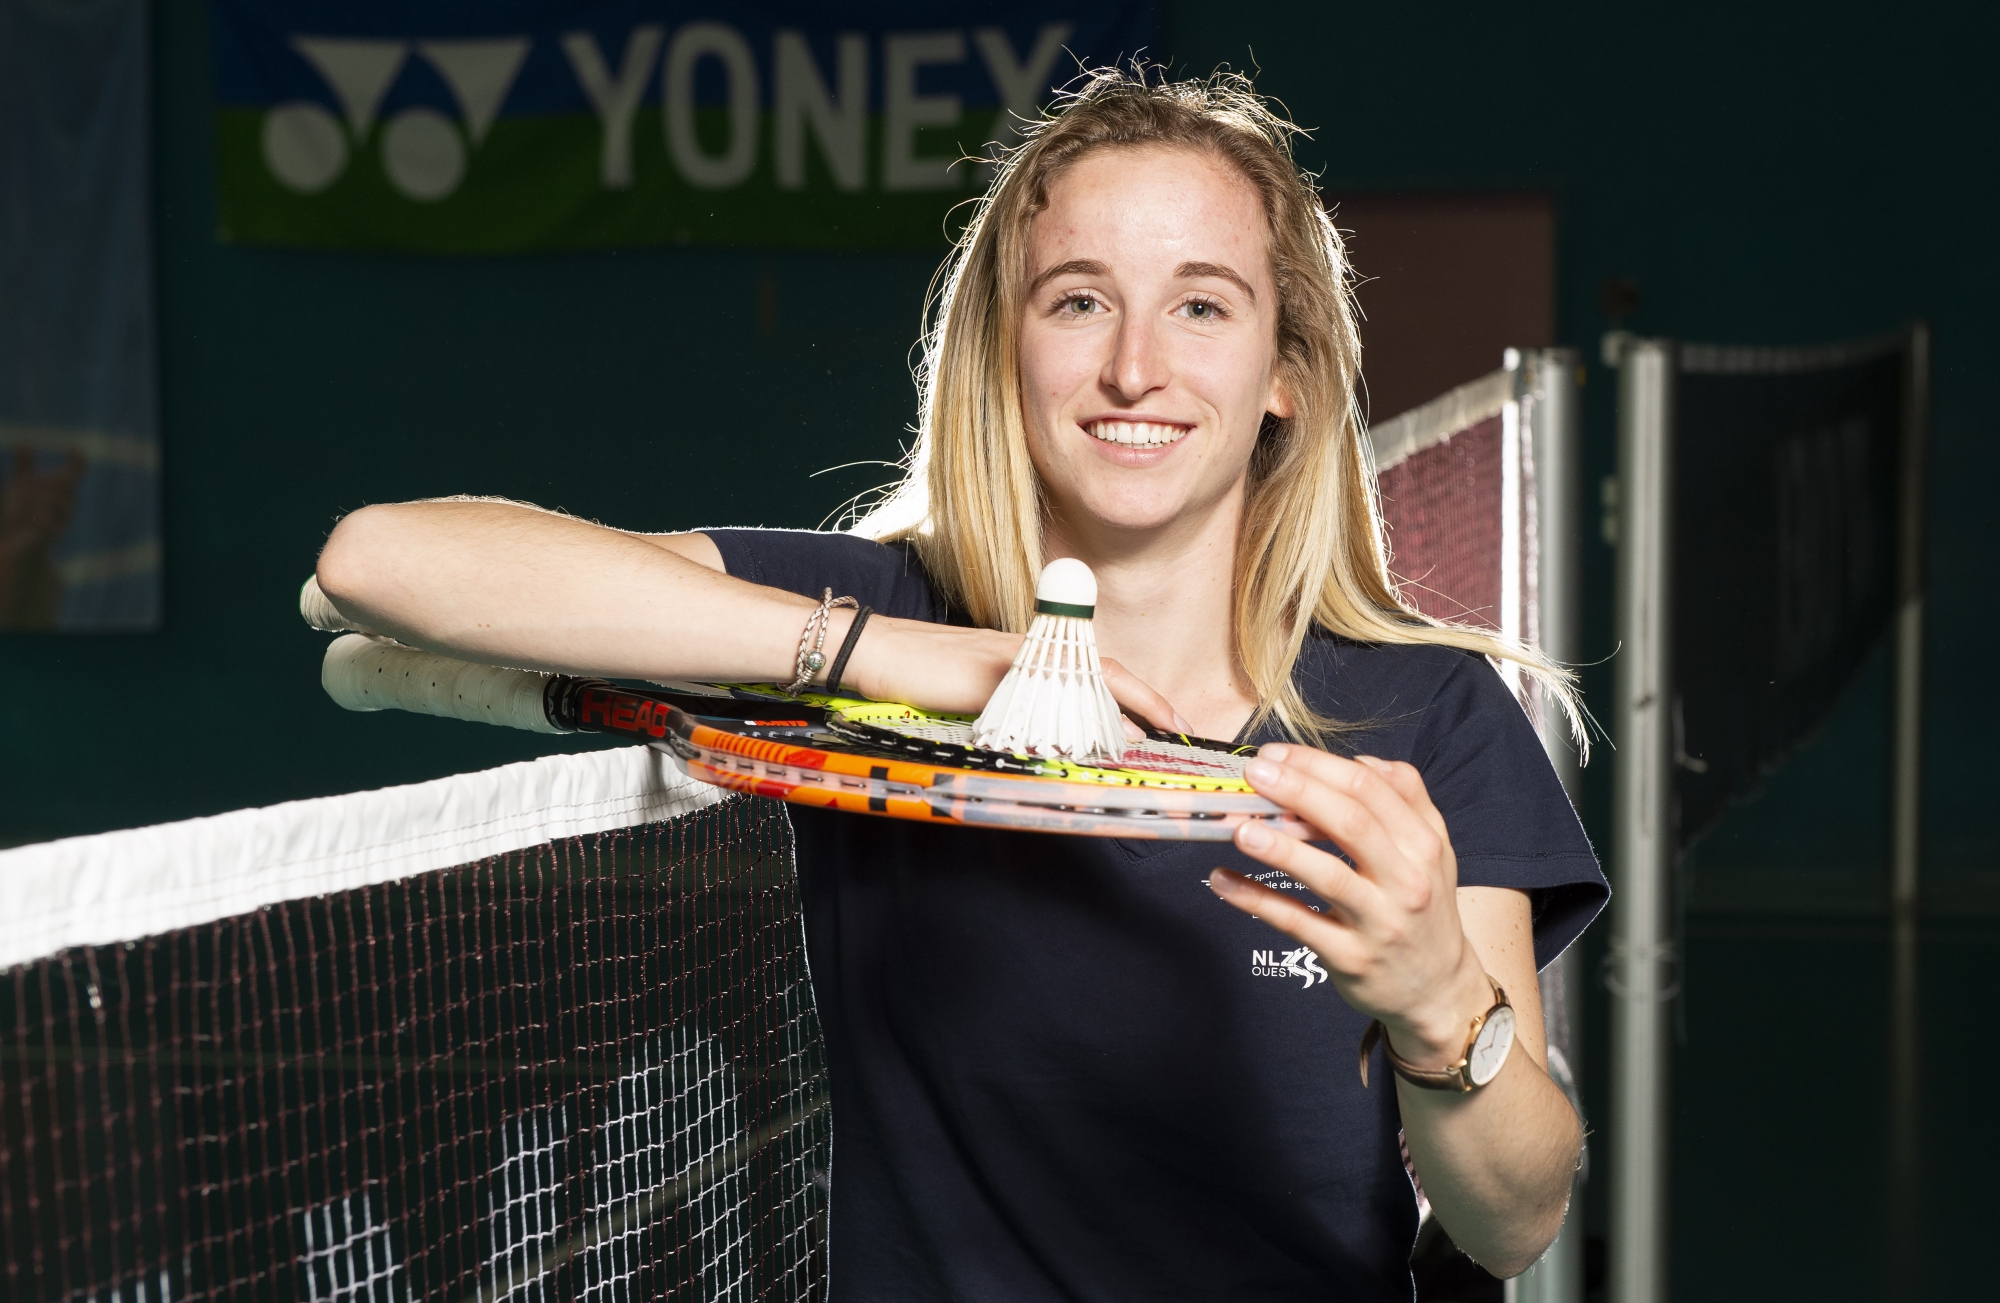 Michelle Fux, du tennis au badminton et vice-versa. 